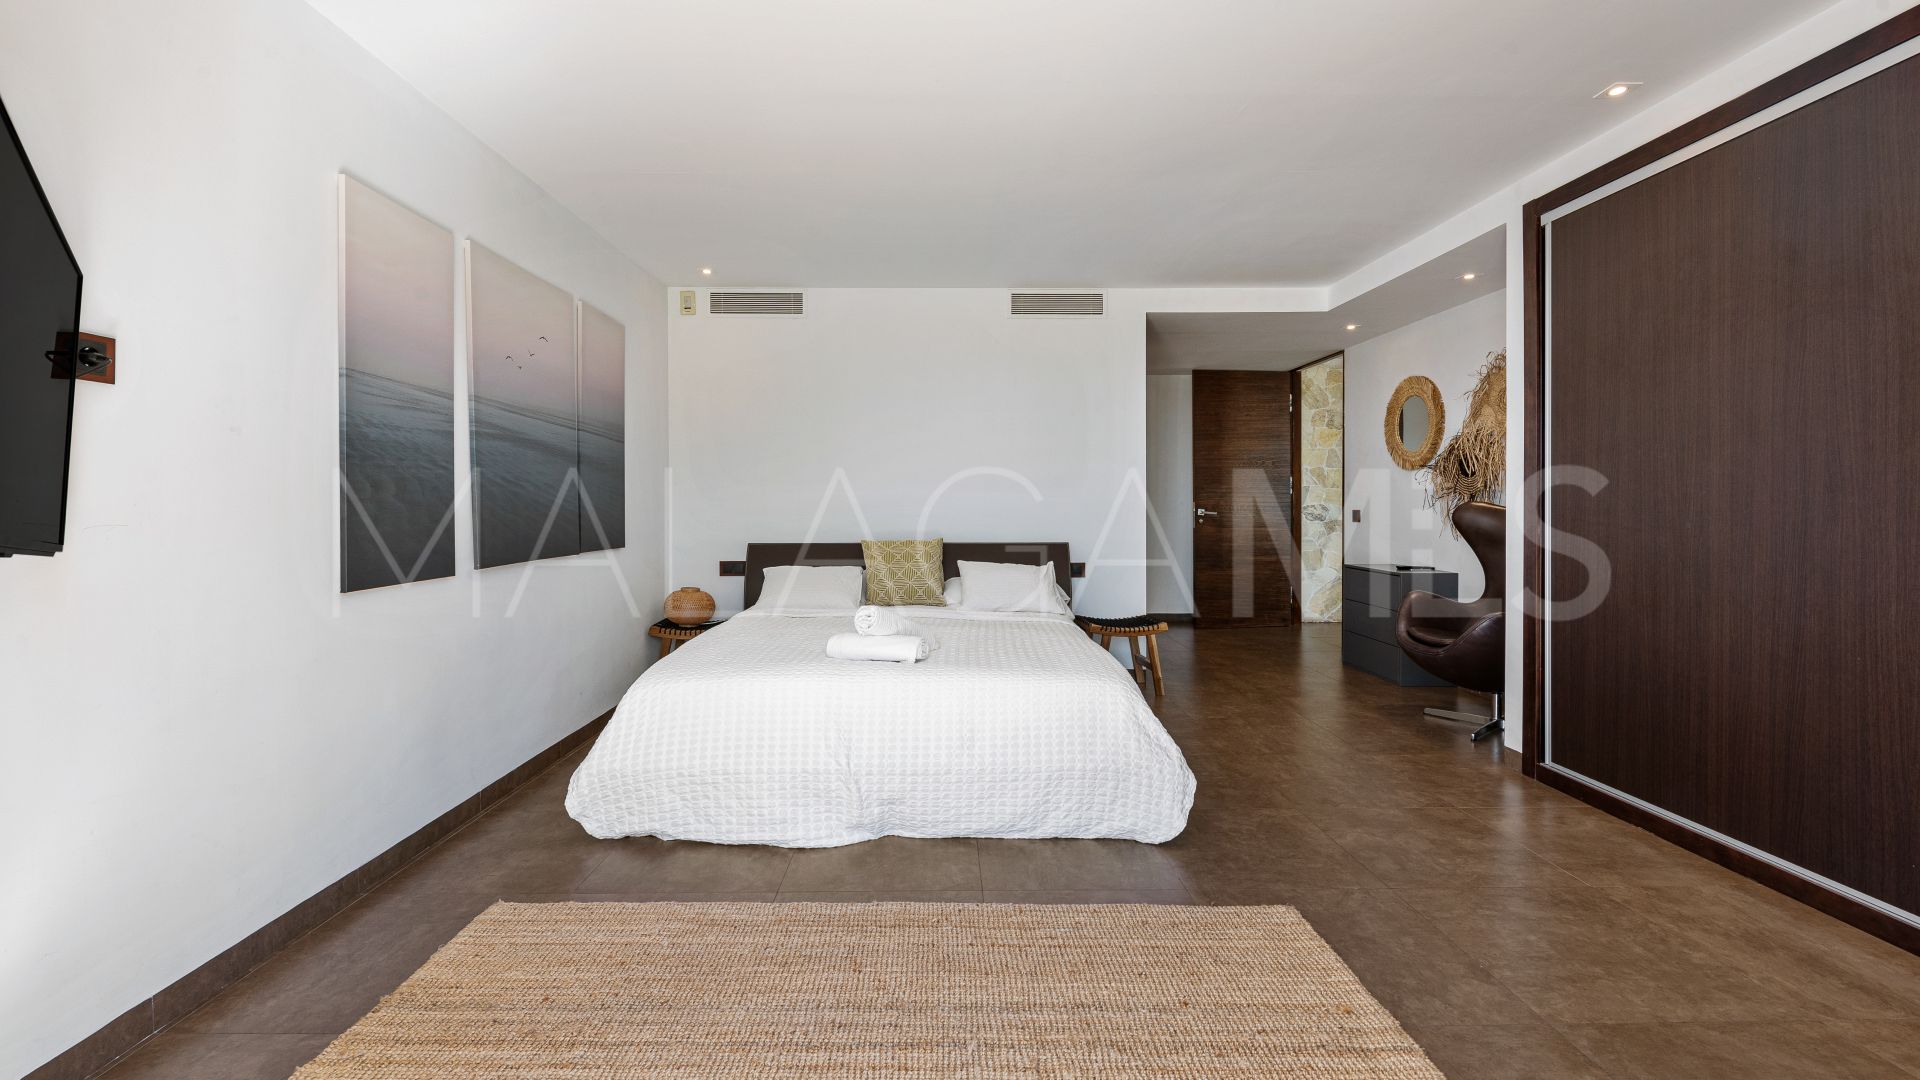 For sale La Alqueria villa with 8 bedrooms